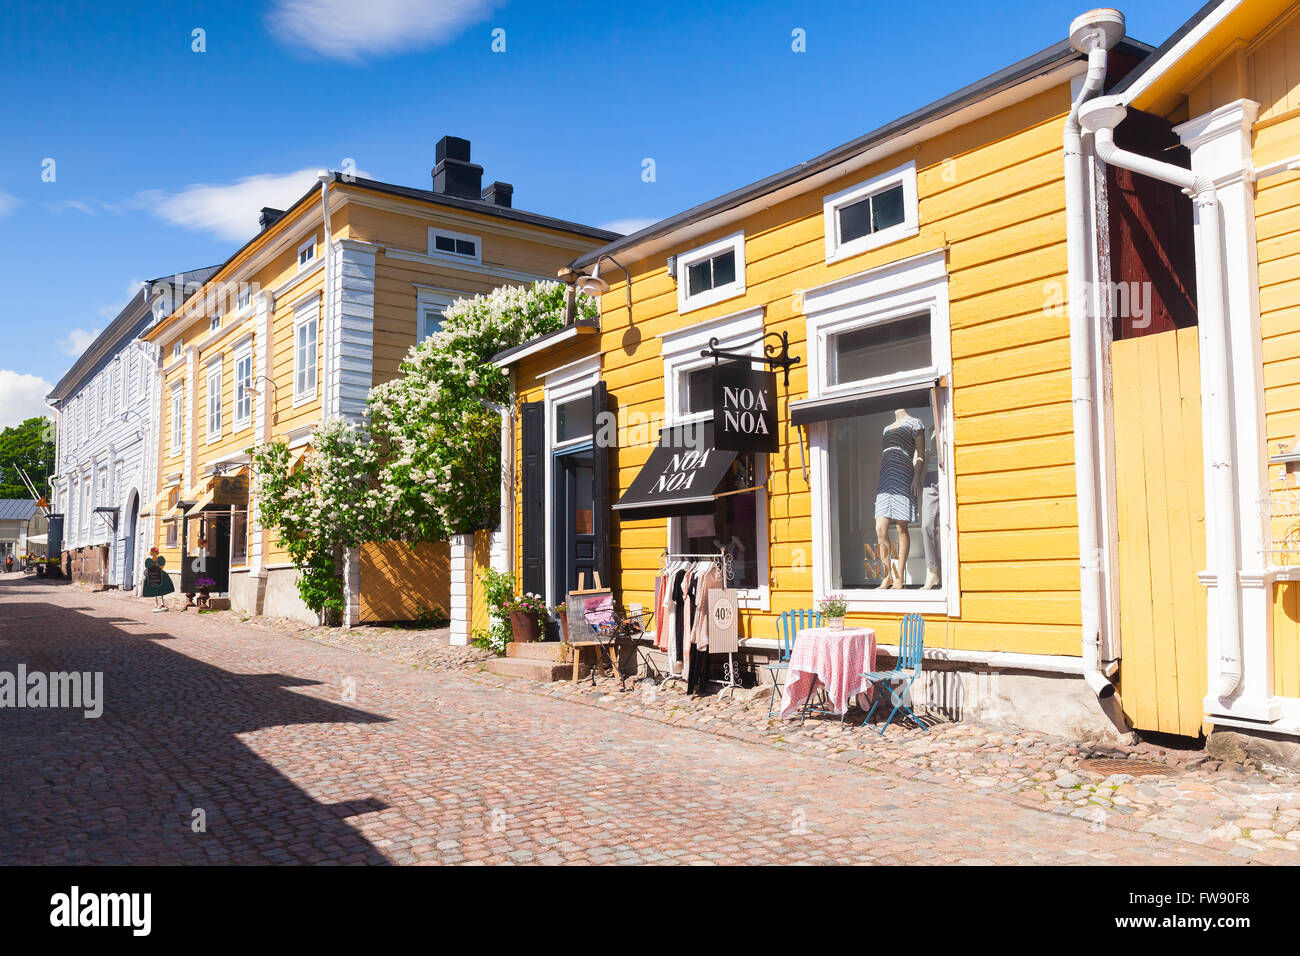 Porvoo, Finlandia - 12 Giugno 2015: Street View di storica città finlandese di Porvoo con piccoli negozi nei tradizionali vecchie case in legno Foto Stock